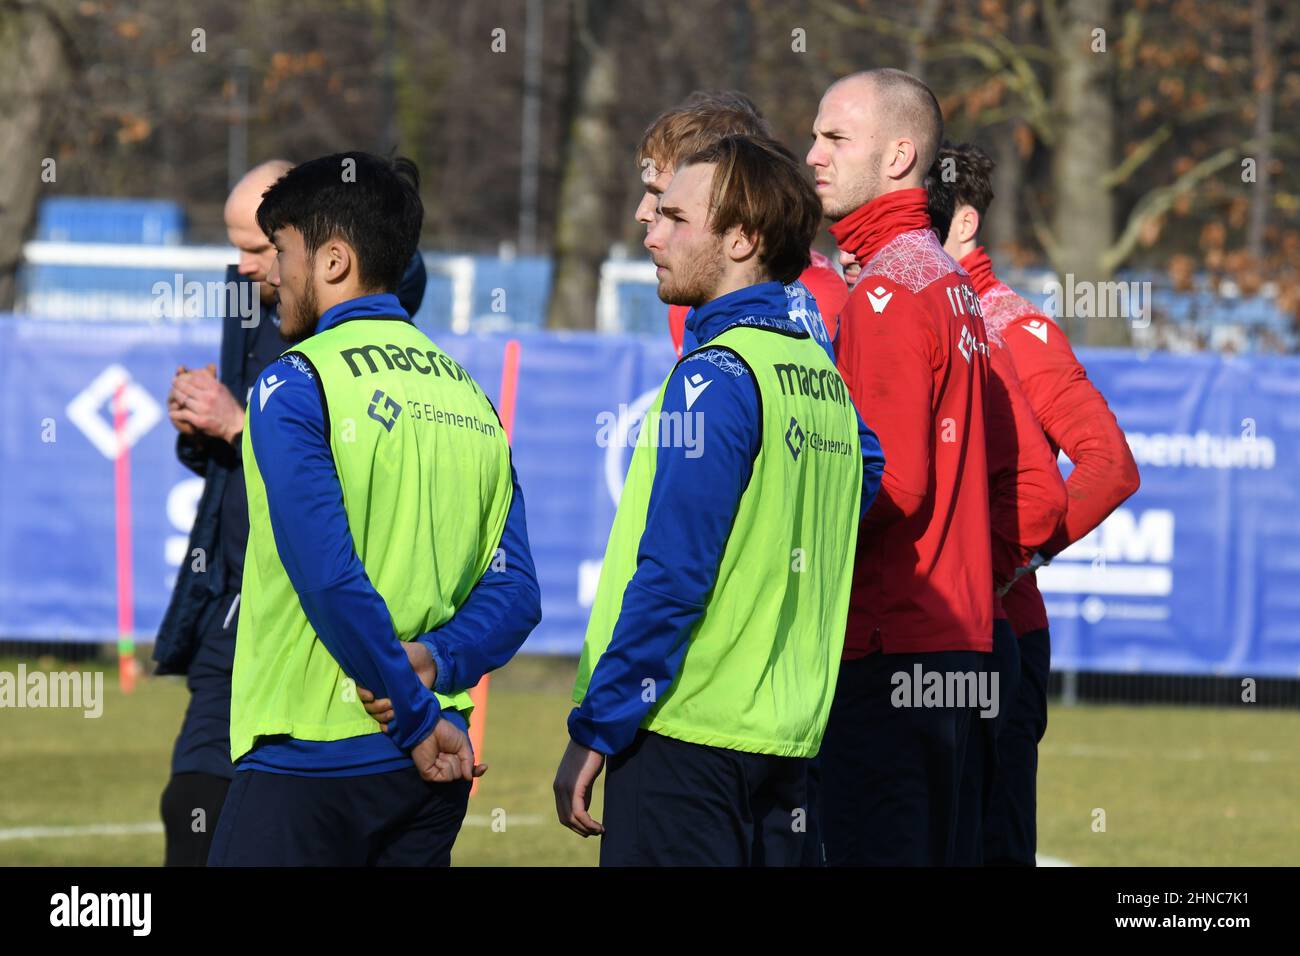 KSC-Training with youth players Rossmann, Von der Felsen und Theisinger Stock Photo